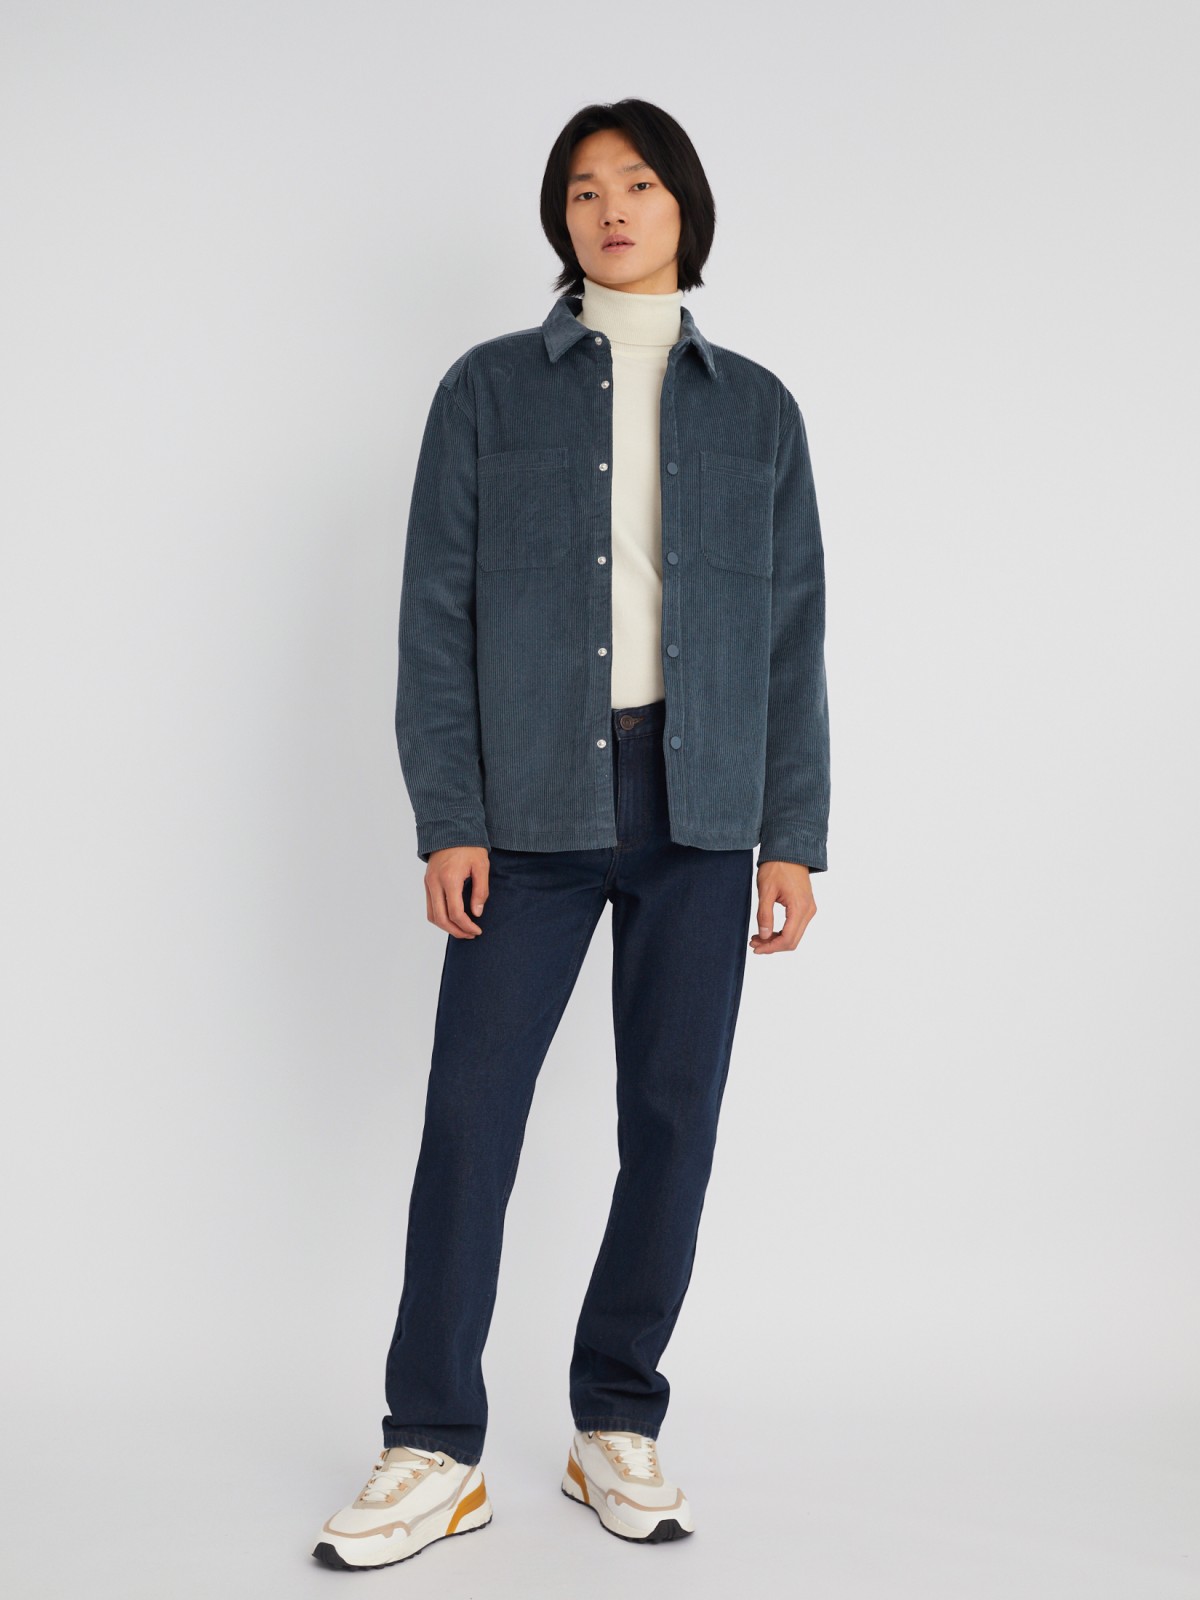 Утеплённая вельветовая куртка-рубашка на синтепоне zolla 013325159134, цвет синий, размер M - фото 2